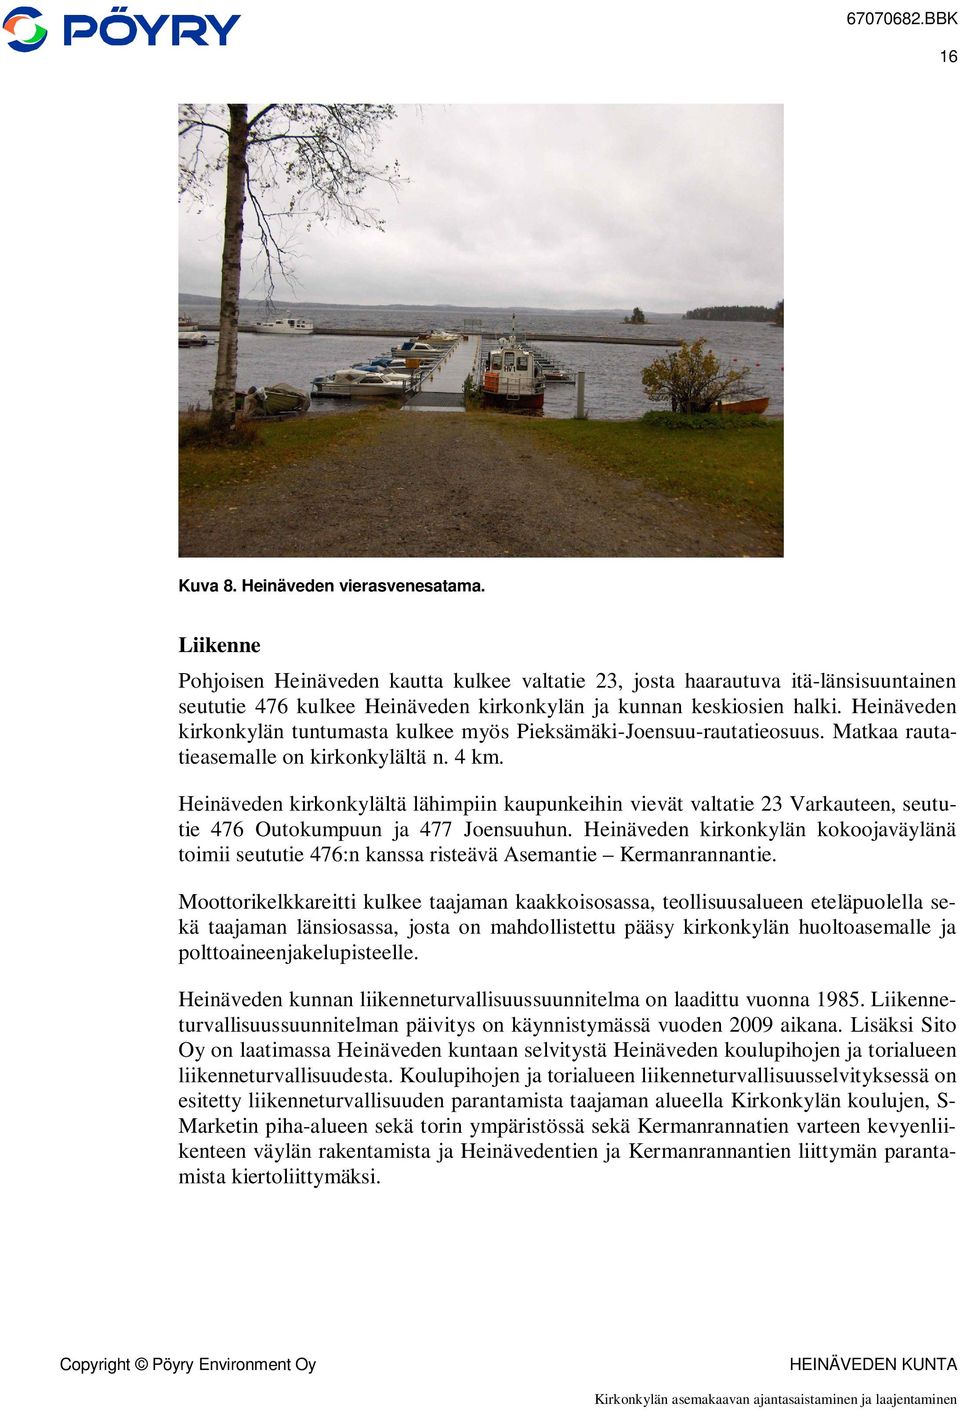 Heinäveden kirkonkylän tuntumasta kulkee myös Pieksämäki-Joensuu-rautatieosuus. Matkaa rautatieasemalle on kirkonkylältä n. 4 km.